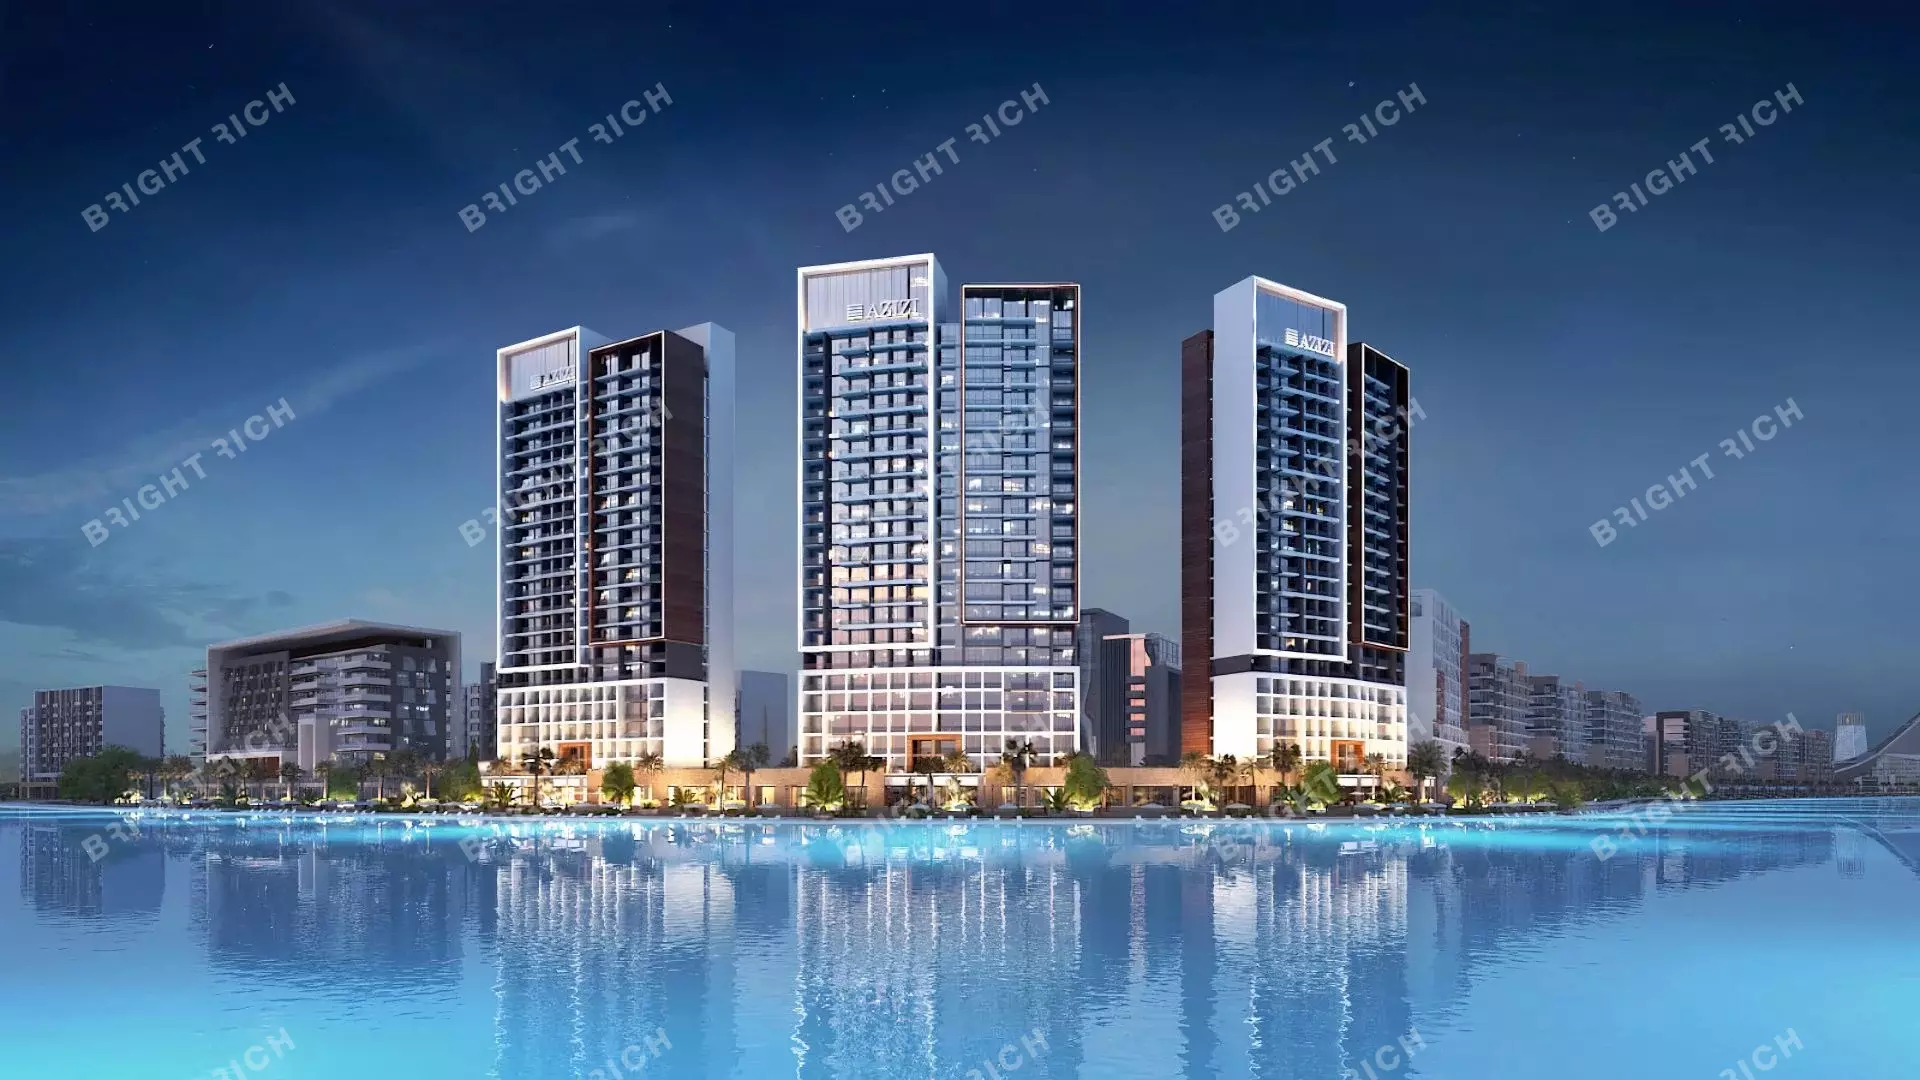 Azizi Riviera Building 14, apart complex in Dubai